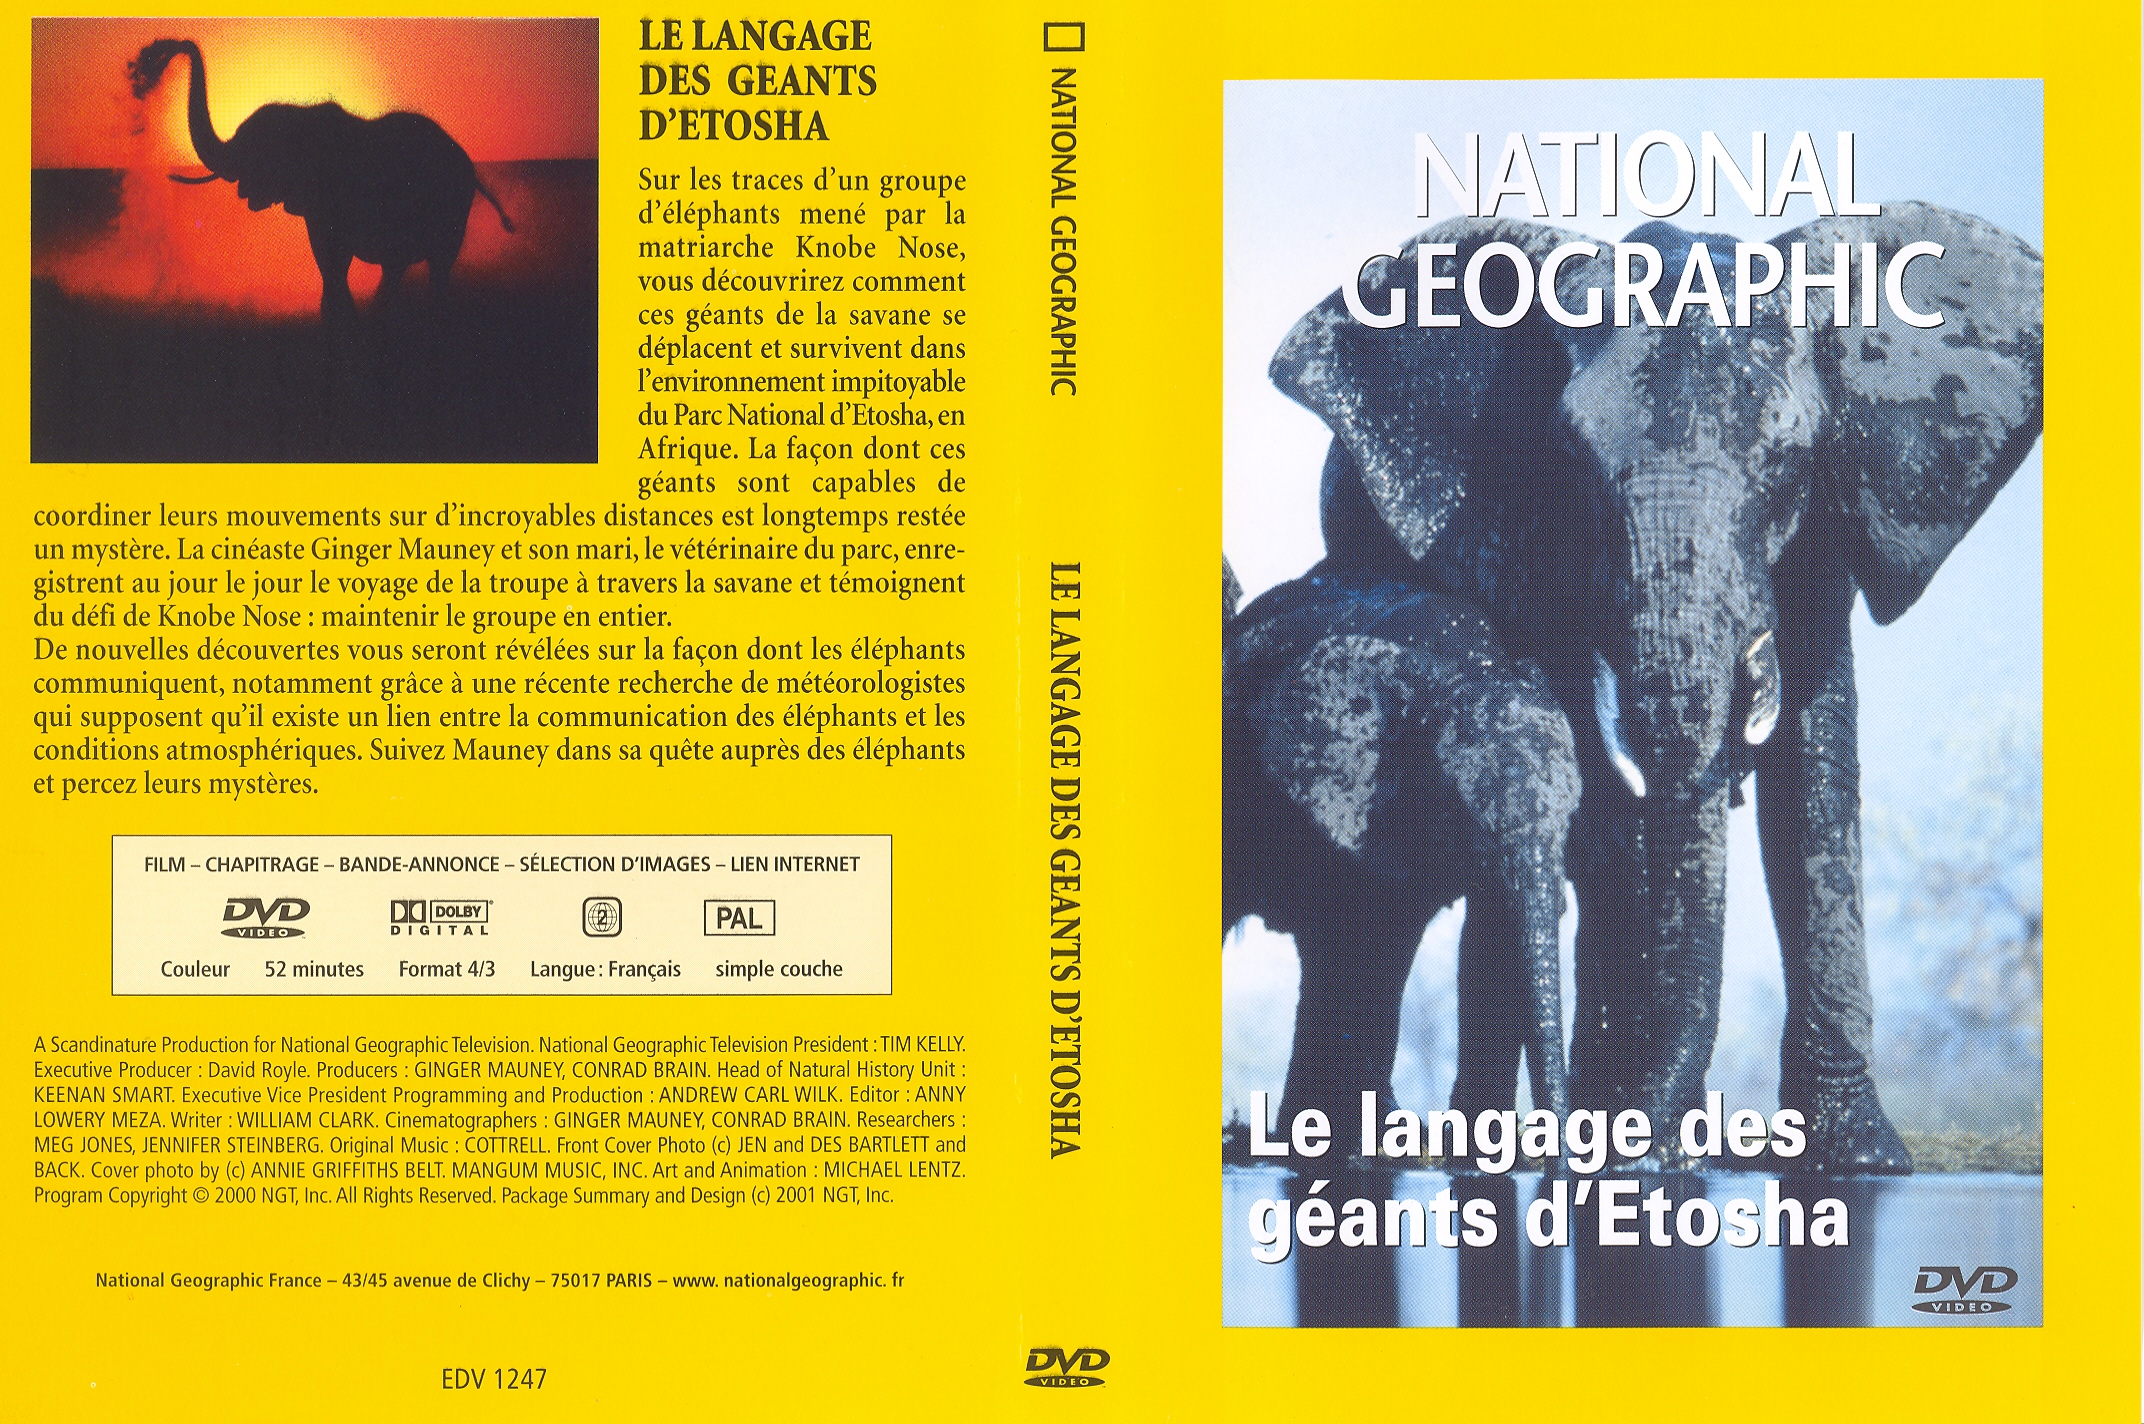 Jaquette DVD National Gographic - Le langage des gants d